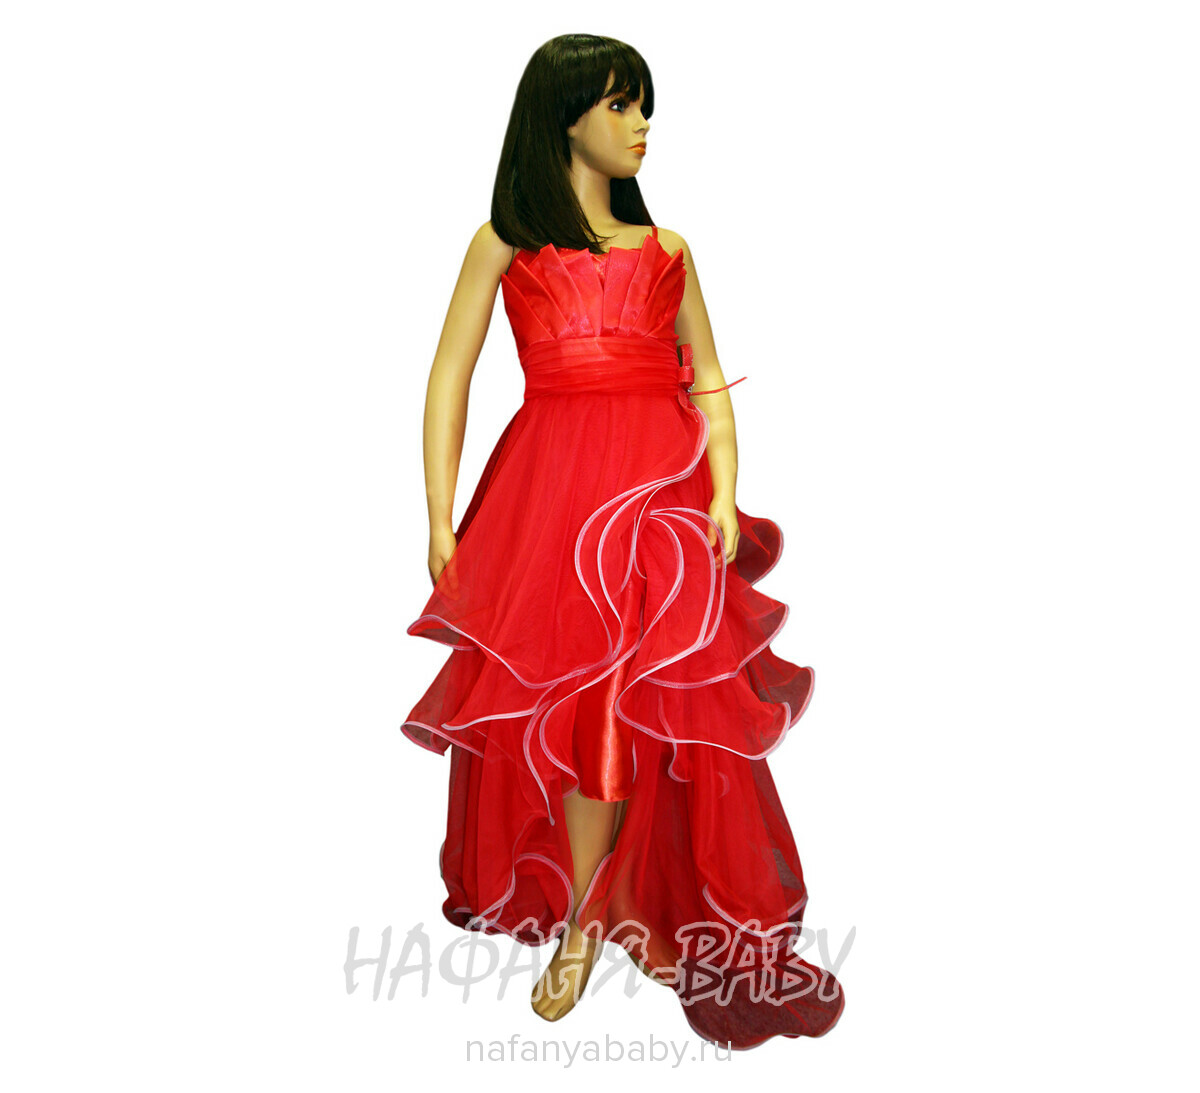 Подростковое нарядное платье ALTIN KIDS, купить в интернет магазине Нафаня. арт: 2102.